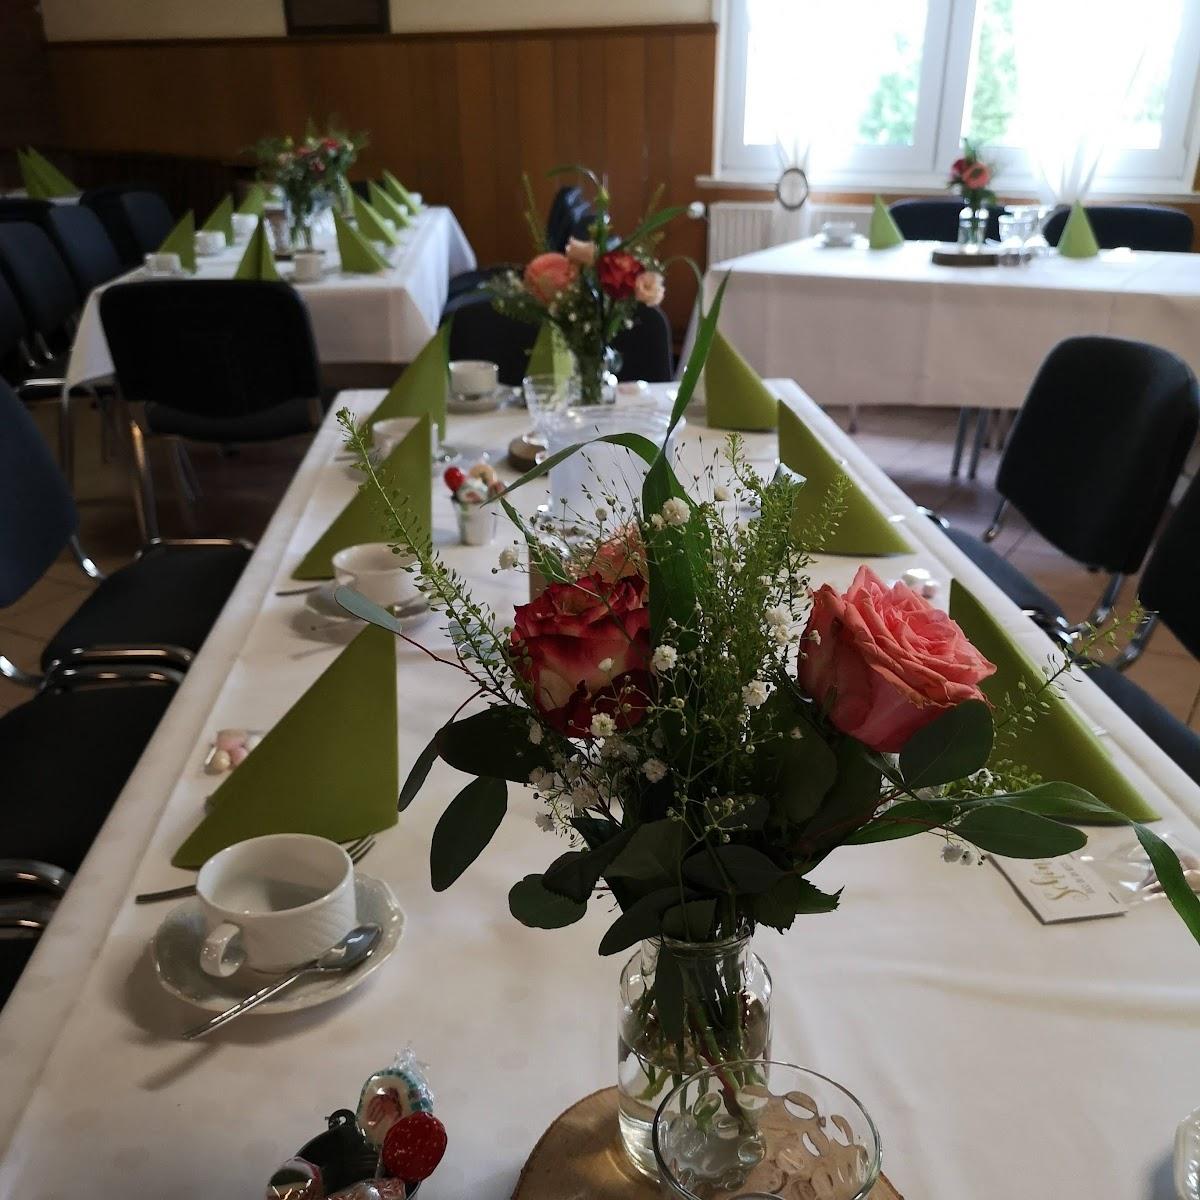 Restaurant "Monteurzimmer Gasthaus zur Erholung" in Nörten-Hardenberg